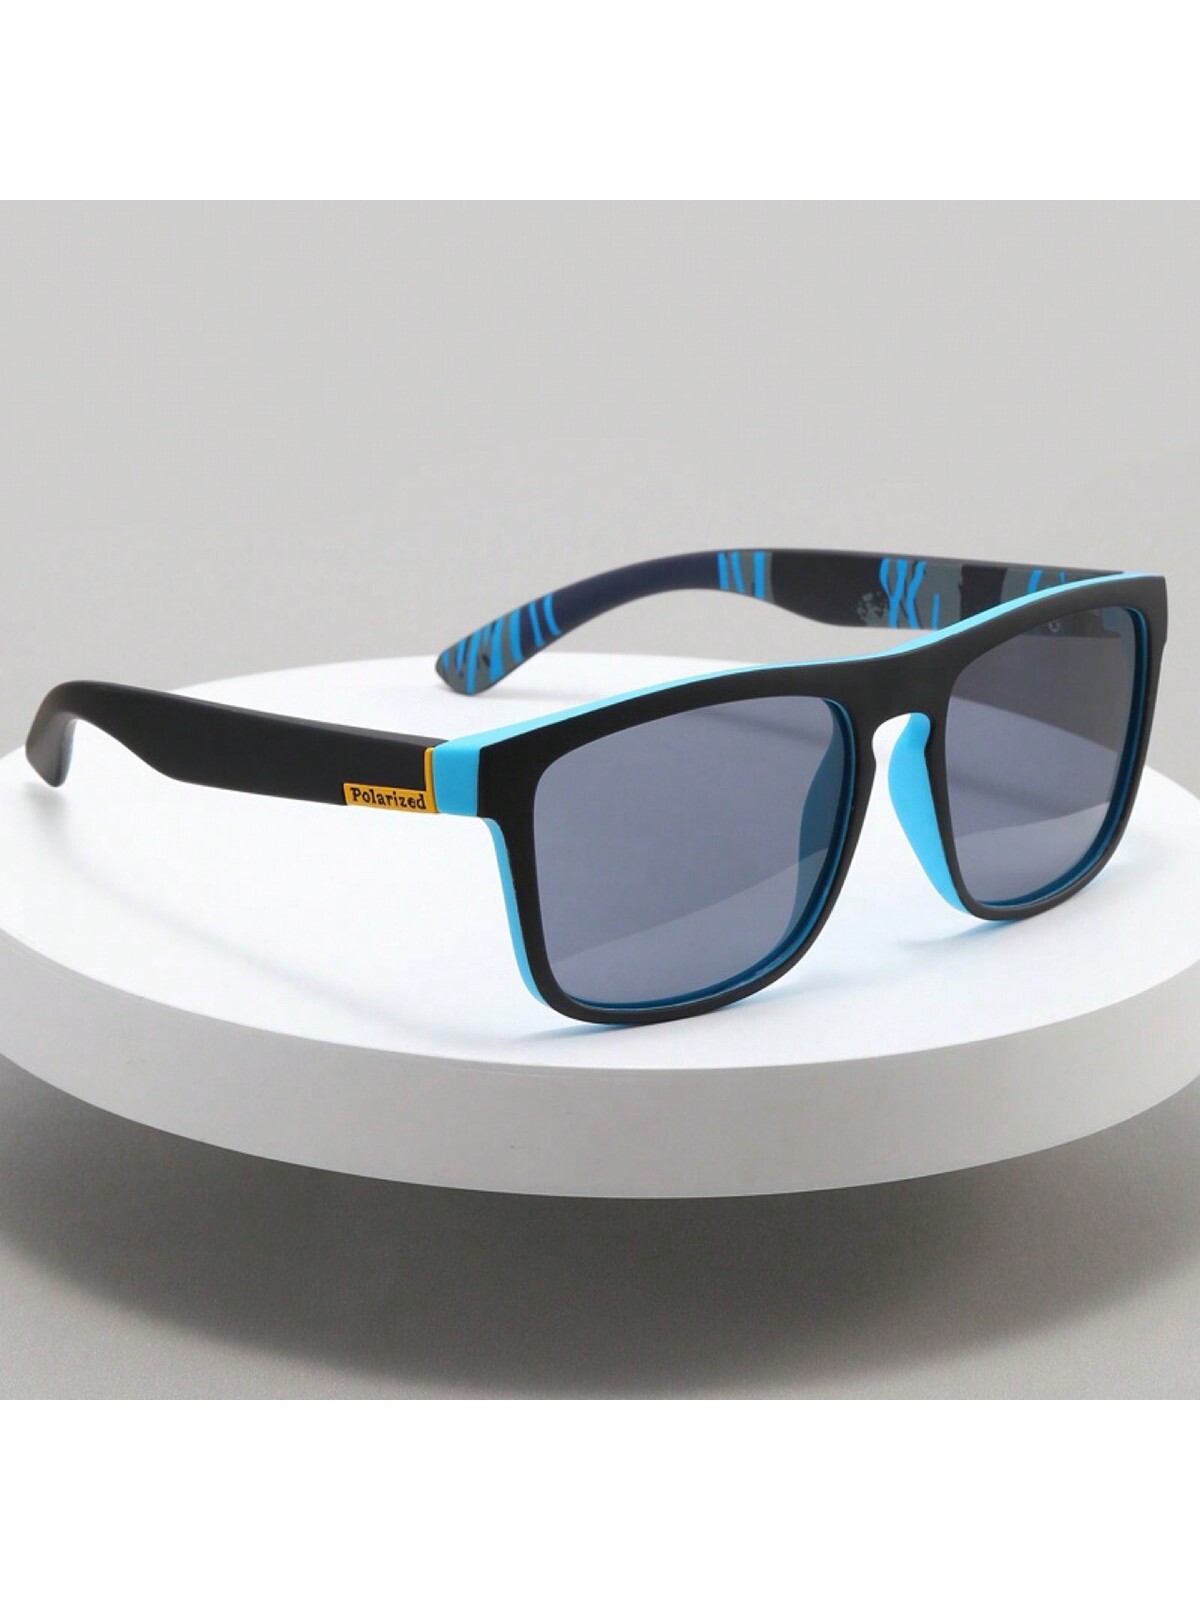 Поляризованные солнцезащитные очки D731 для спорта винтажные мотоциклетные очки ветрозащитные многоцветные велосипедные очки в стиле ретро для езды на велосипеде защитные солнцезащитные